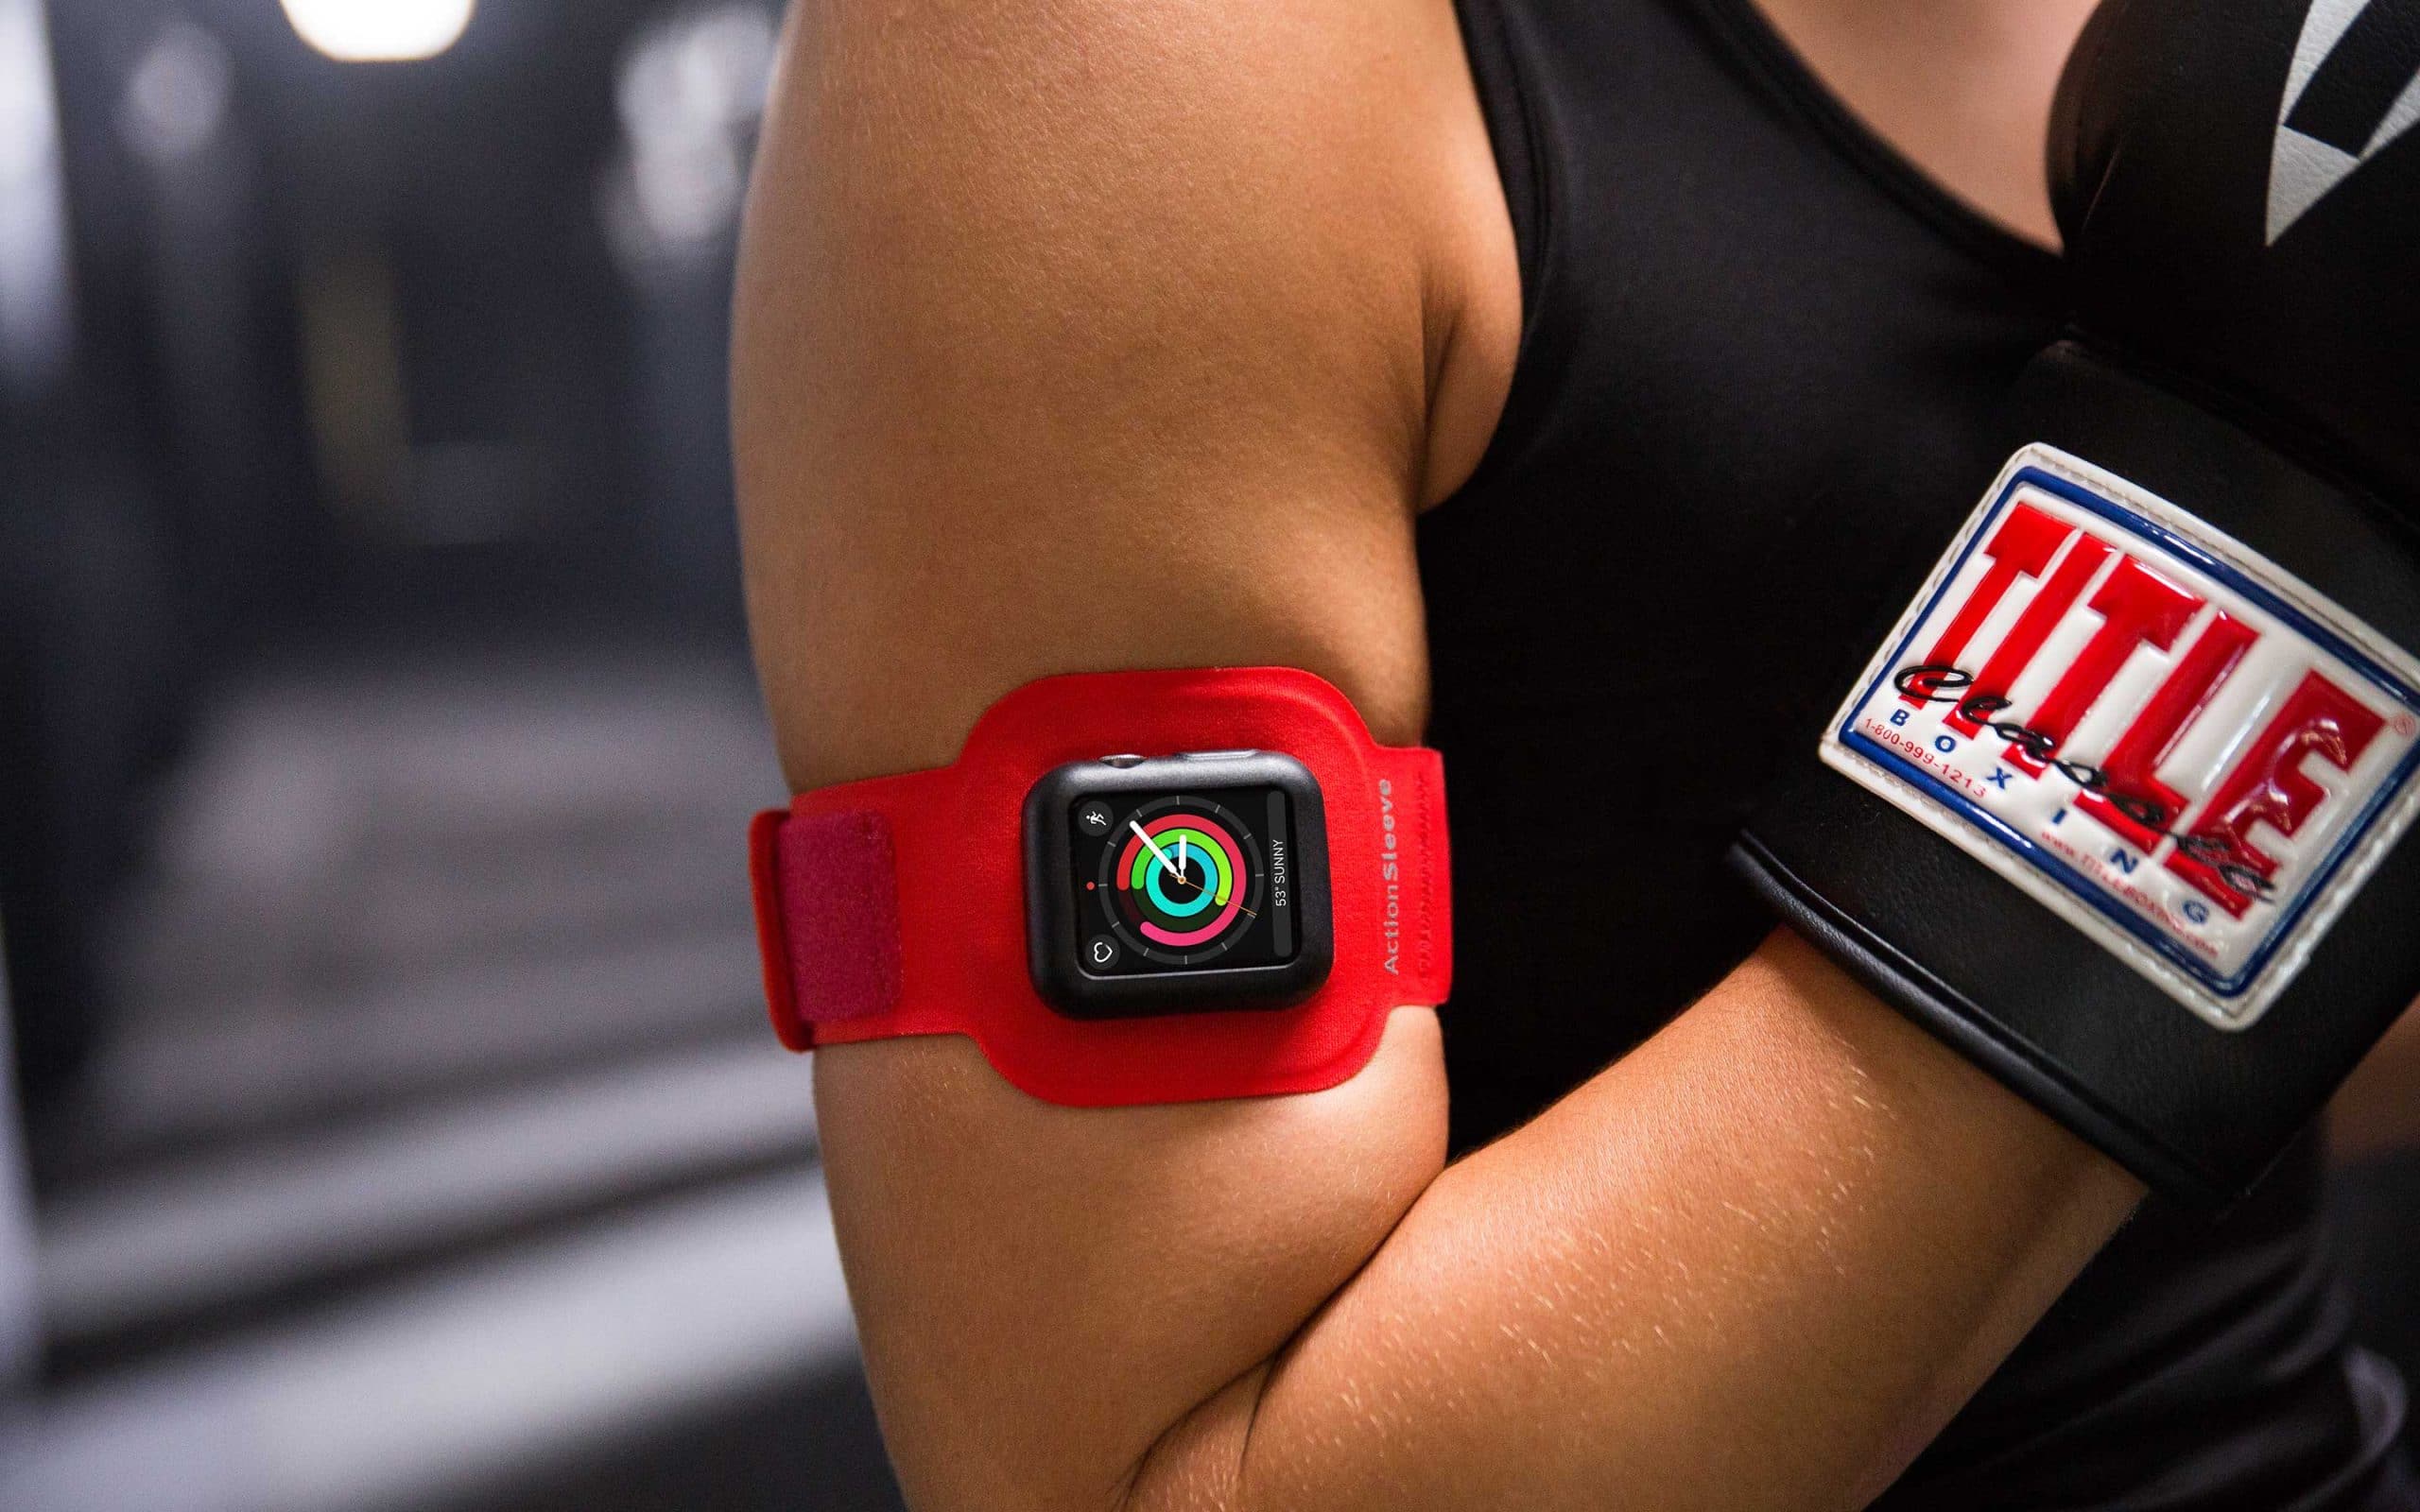 12 apple watch. Фитнес часы Эппл. Спортивный чехол для часов Эппл. Apple watch Fitness. Спортивный чехол для телефона на руку.